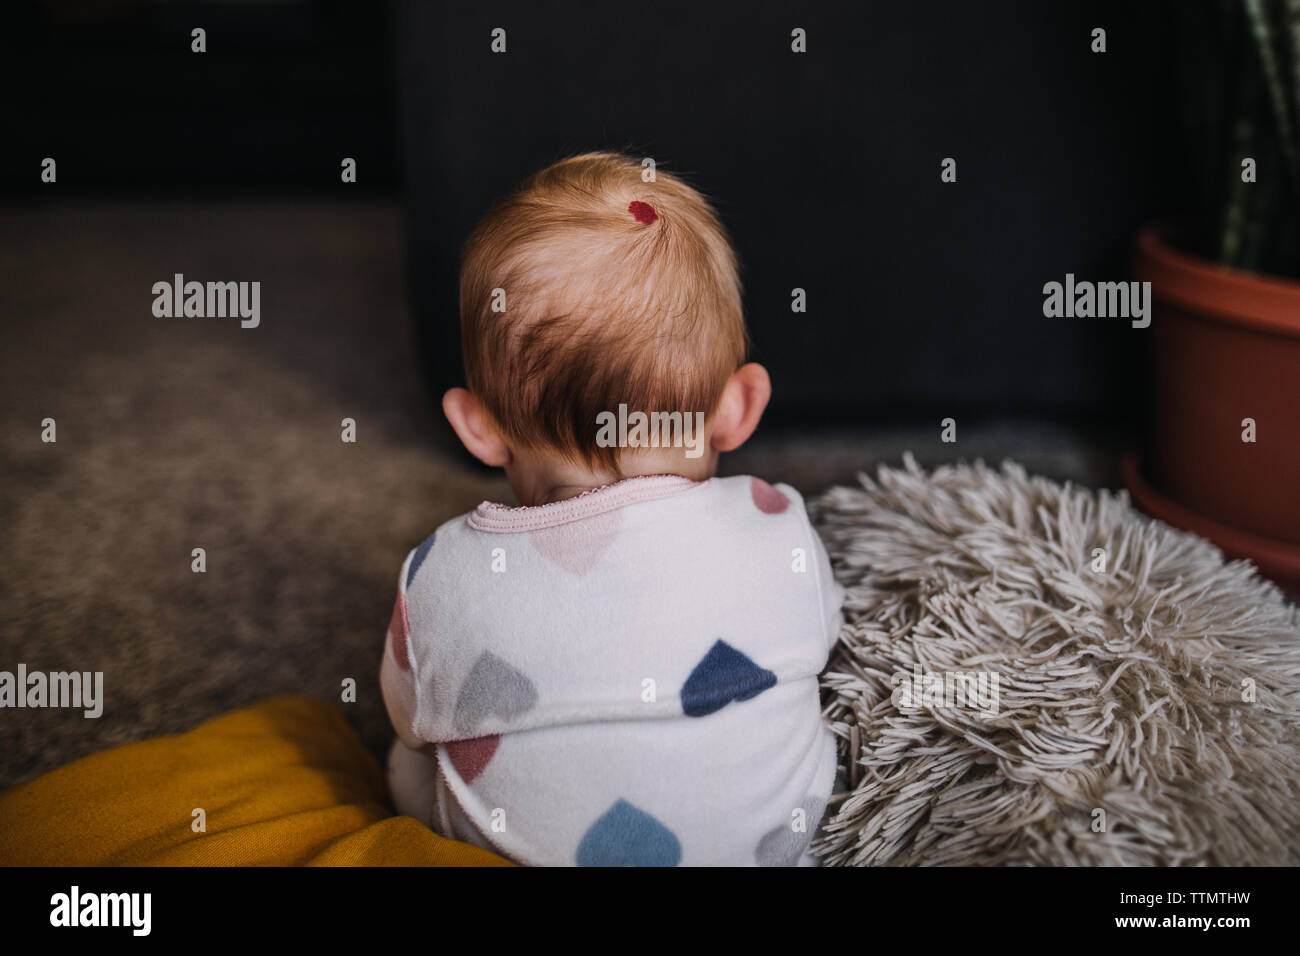 Baby sitting jusqu'à une marque de naissance rouge sur l'arrière de sa tête Banque D'Images